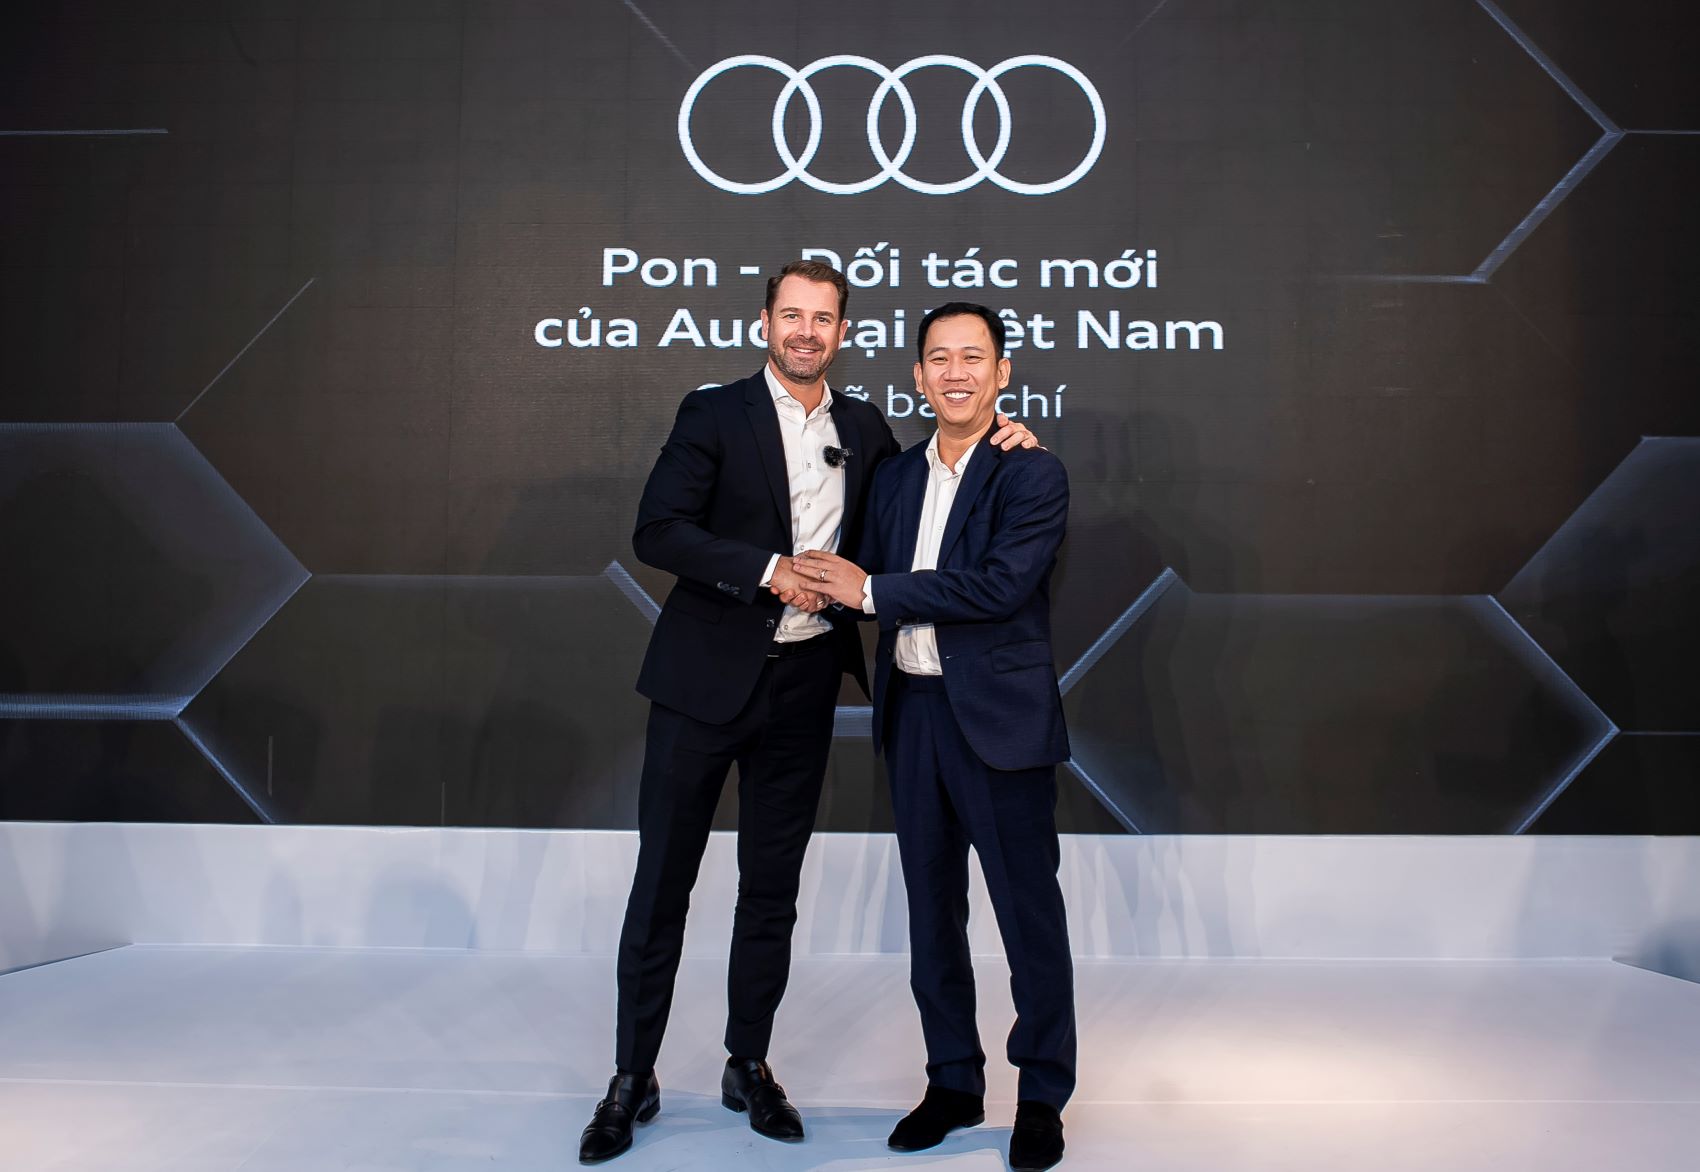 Audi Việt Nam công bố Pon Holdings là cổ đông mới, kỳ vọng thoả mãn nhu cầu của khách hàng Việt